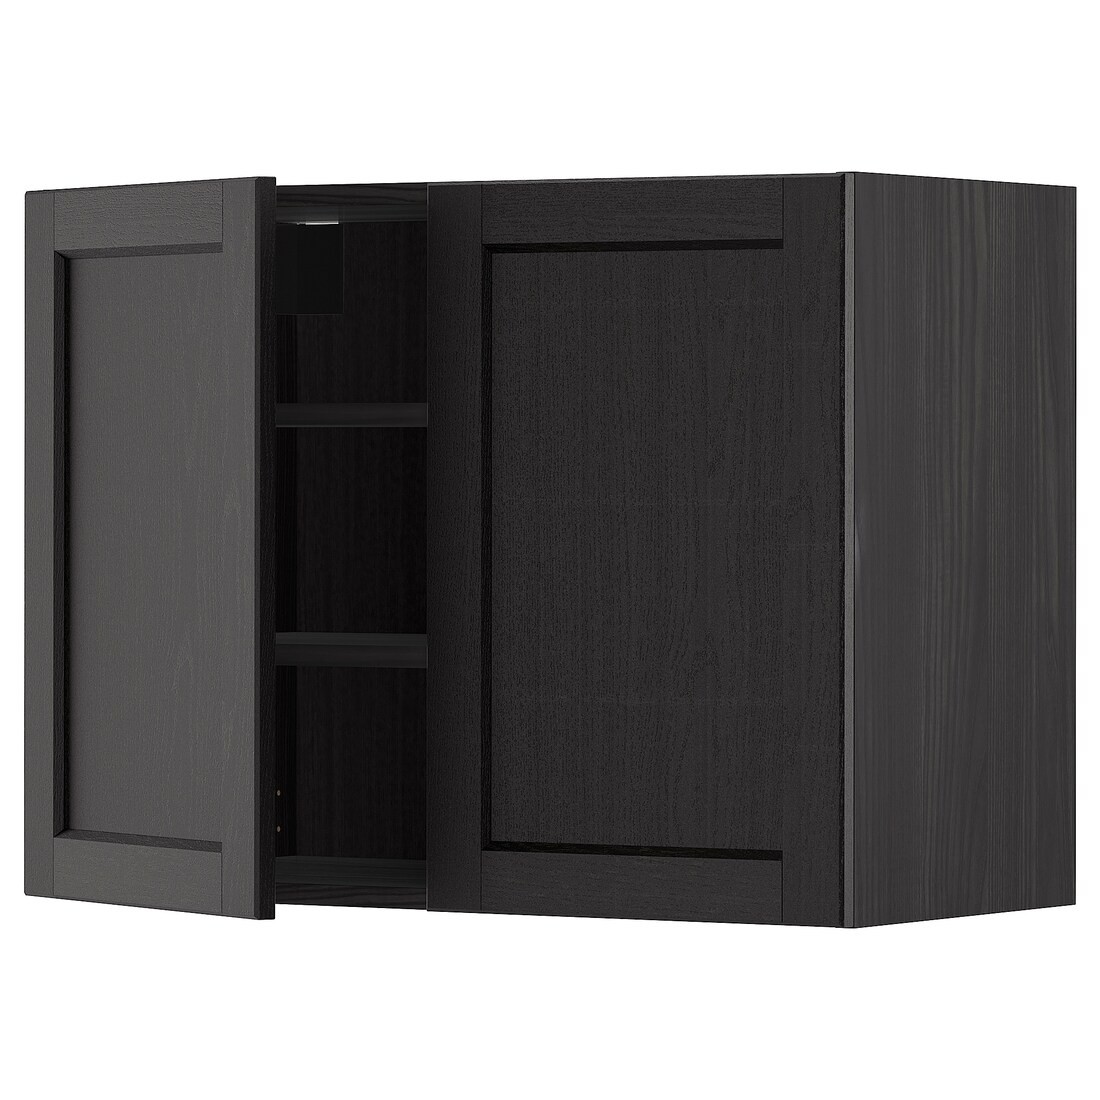 IKEA METOD МЕТОД Навесной шкаф с полками / 2 дверцы, черный / Lerhyttan черная морилка, 80x60 см 69466440 694.664.40